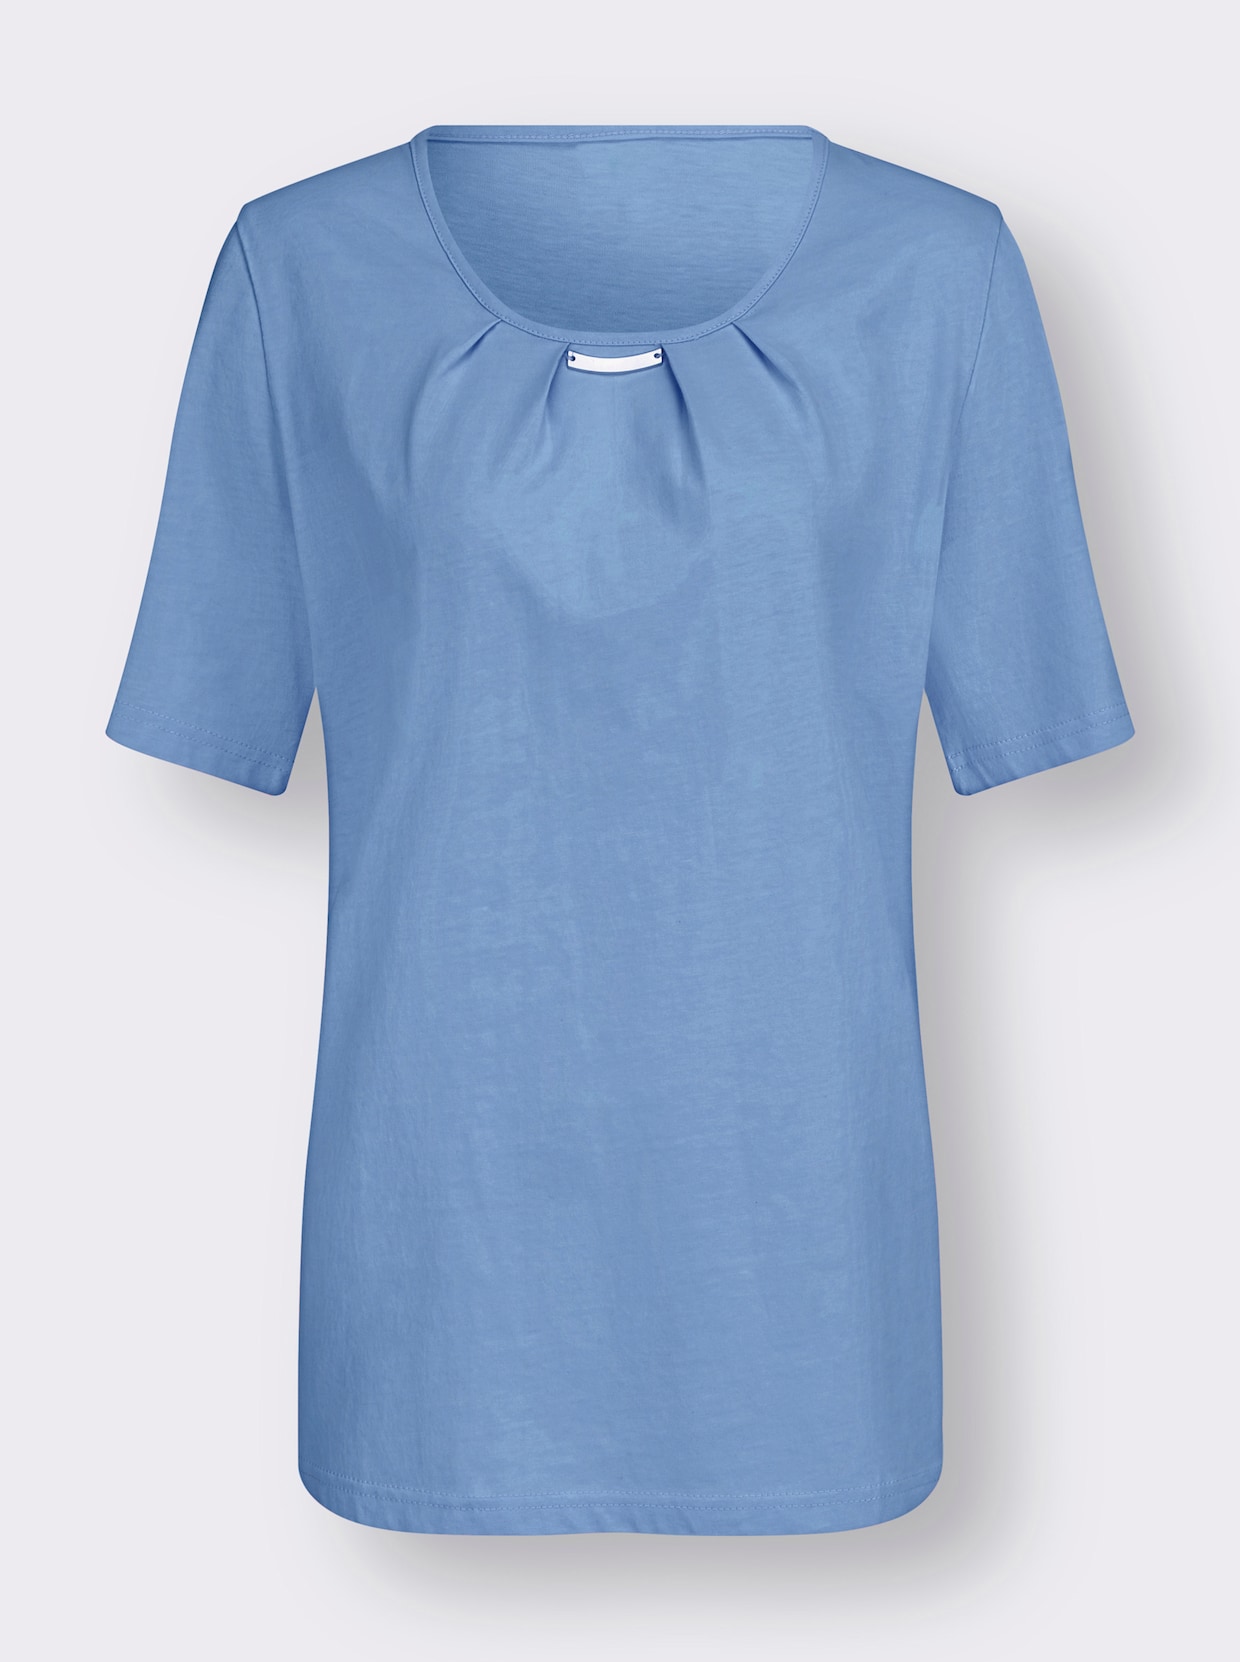 Tričko s krátkým rukávem - nebesky modrá